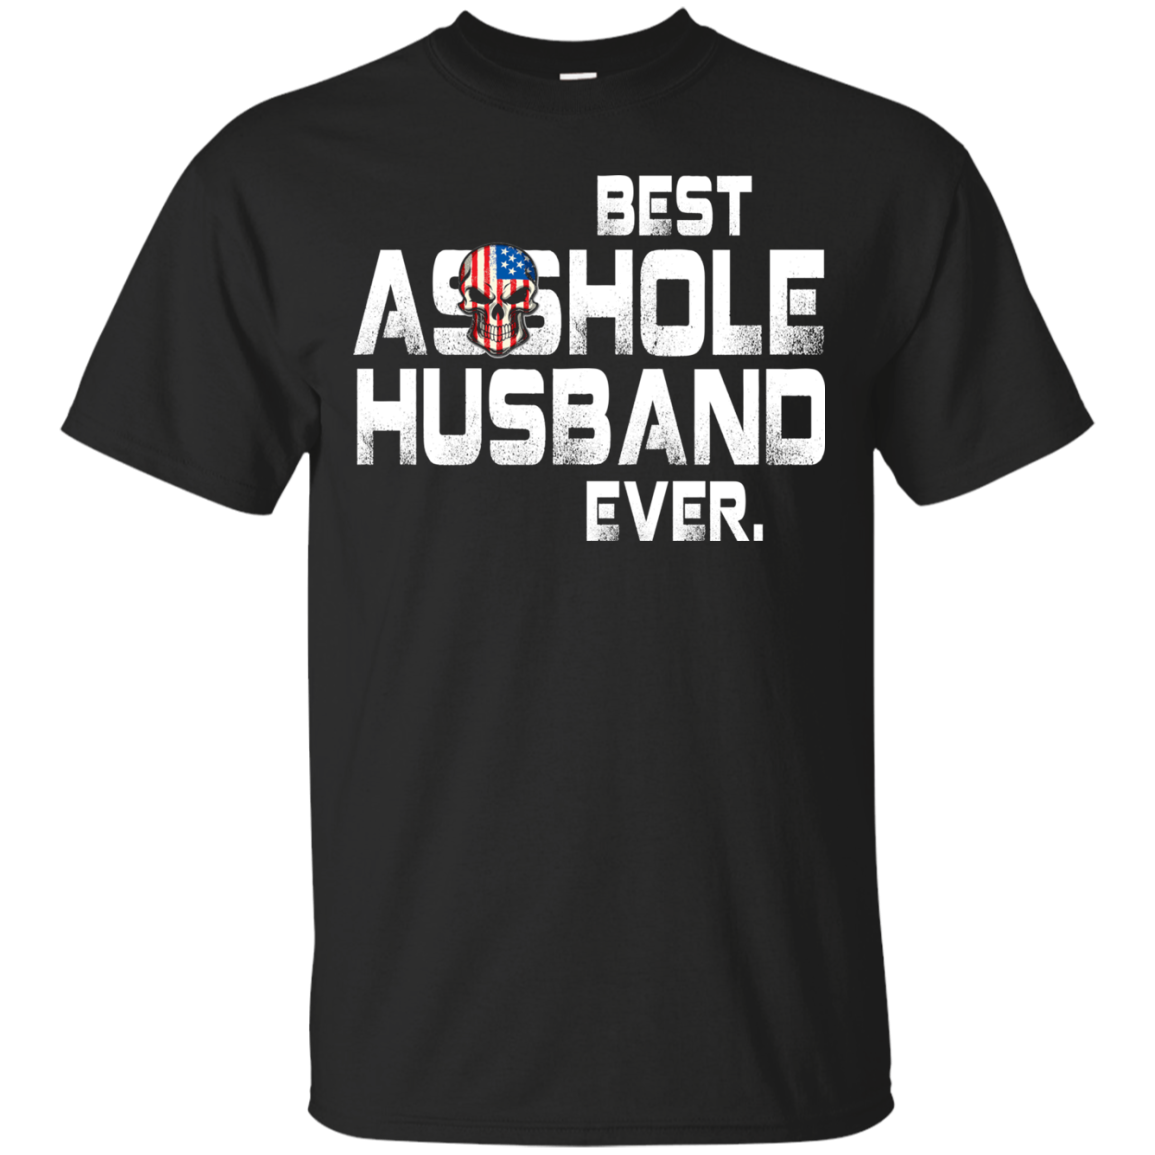 Best Asshole Husband Ever t-shirt, hoodie, tank